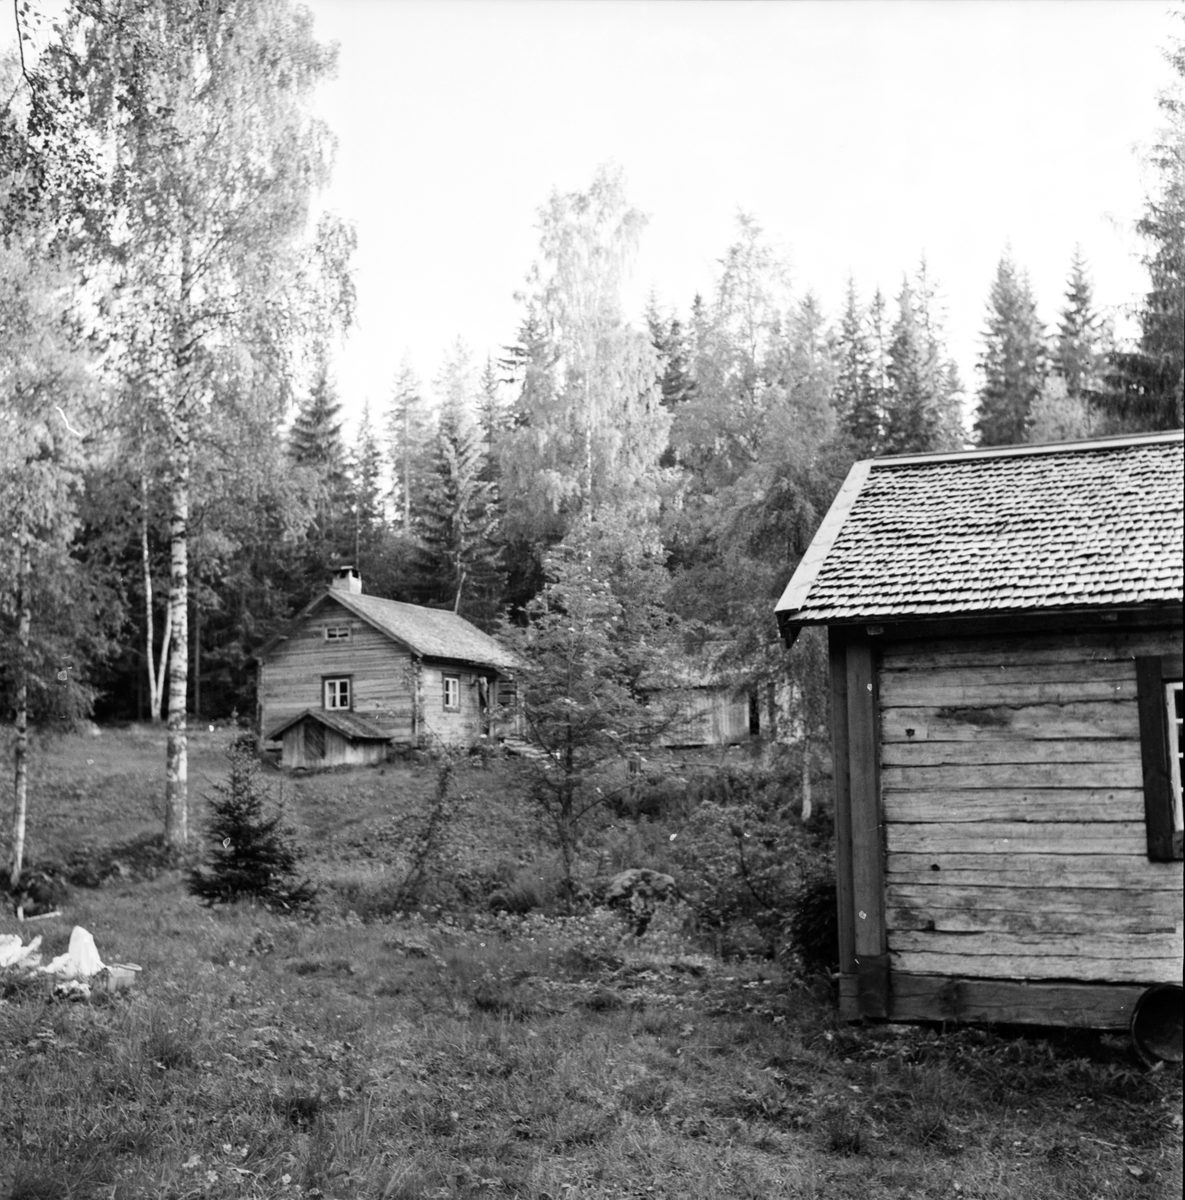 Arbrå,
Änga-Nybo,
Juni 1971